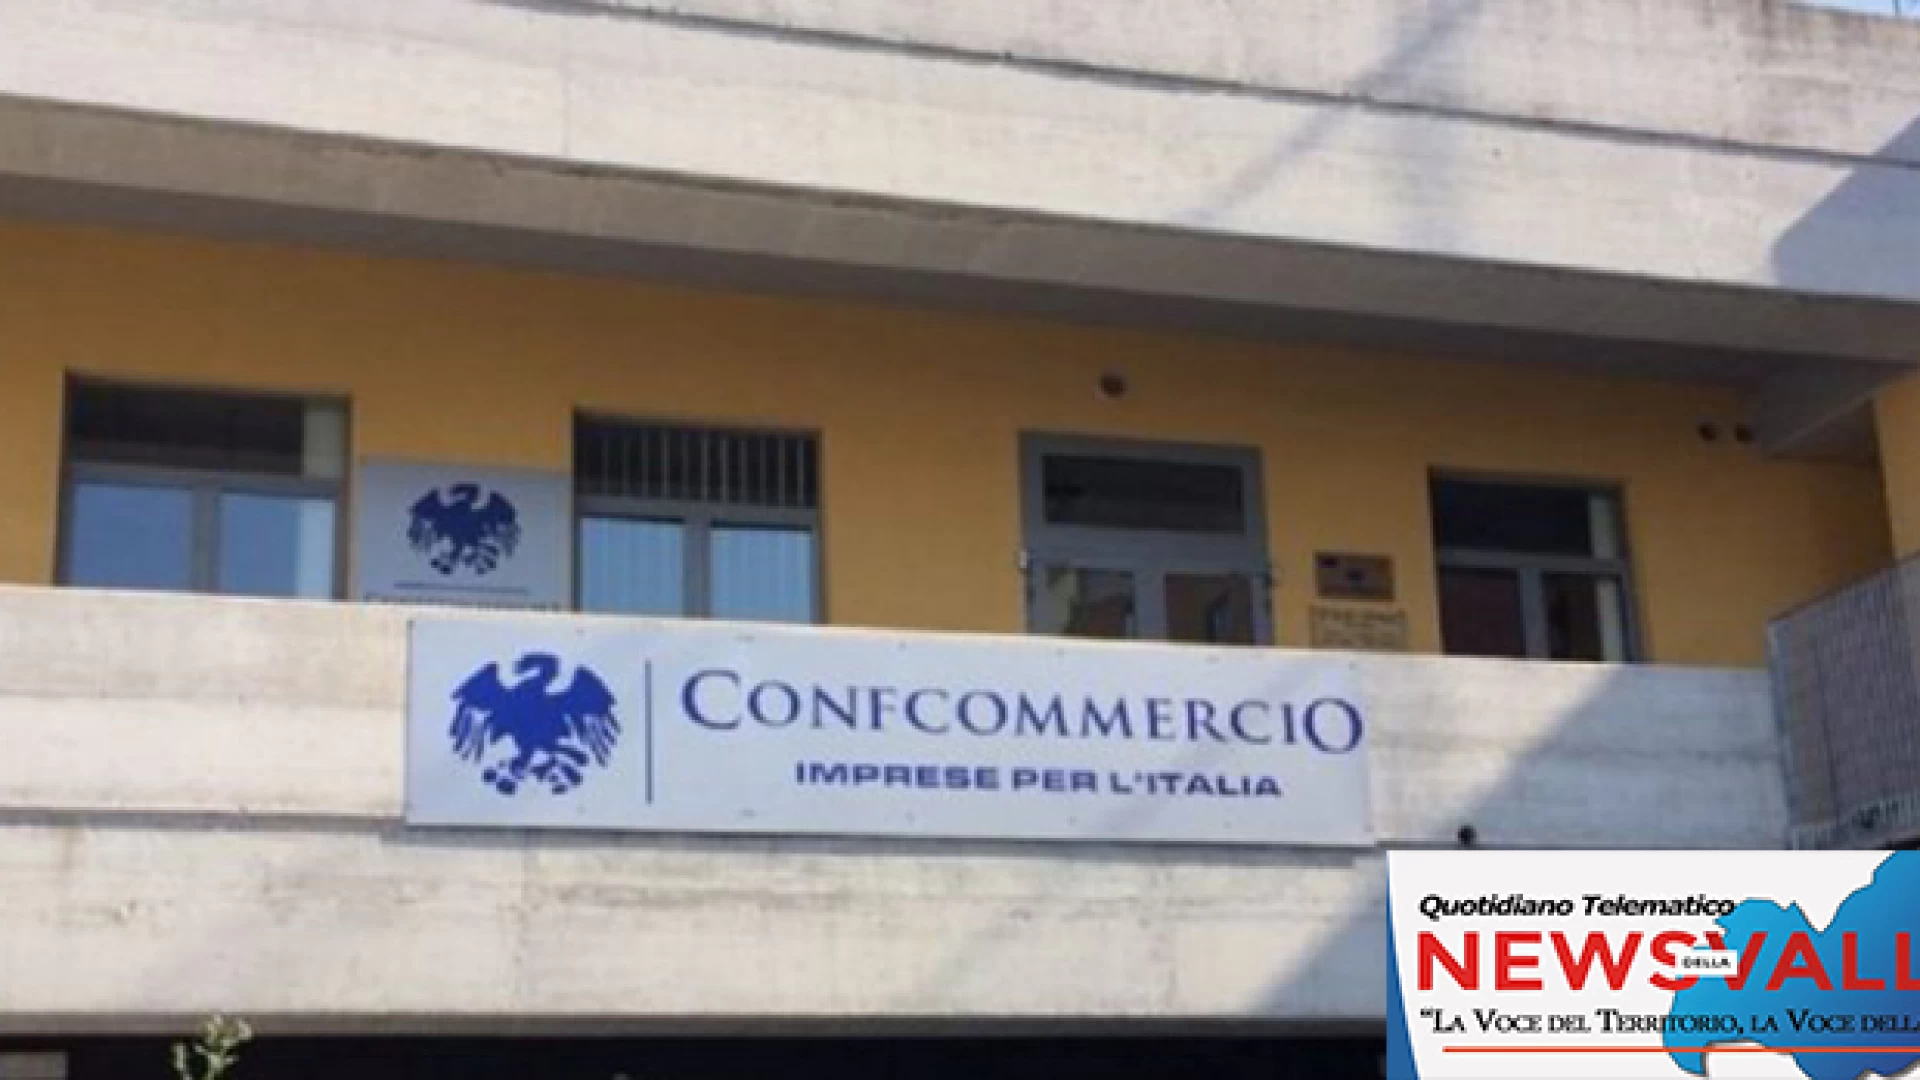 Corrispettivi telematici, Tartaglia (Confcommercio Molise): “Occorre velocizzarsi”. Ultimi incontri tematici ad Agnone e Venafro.